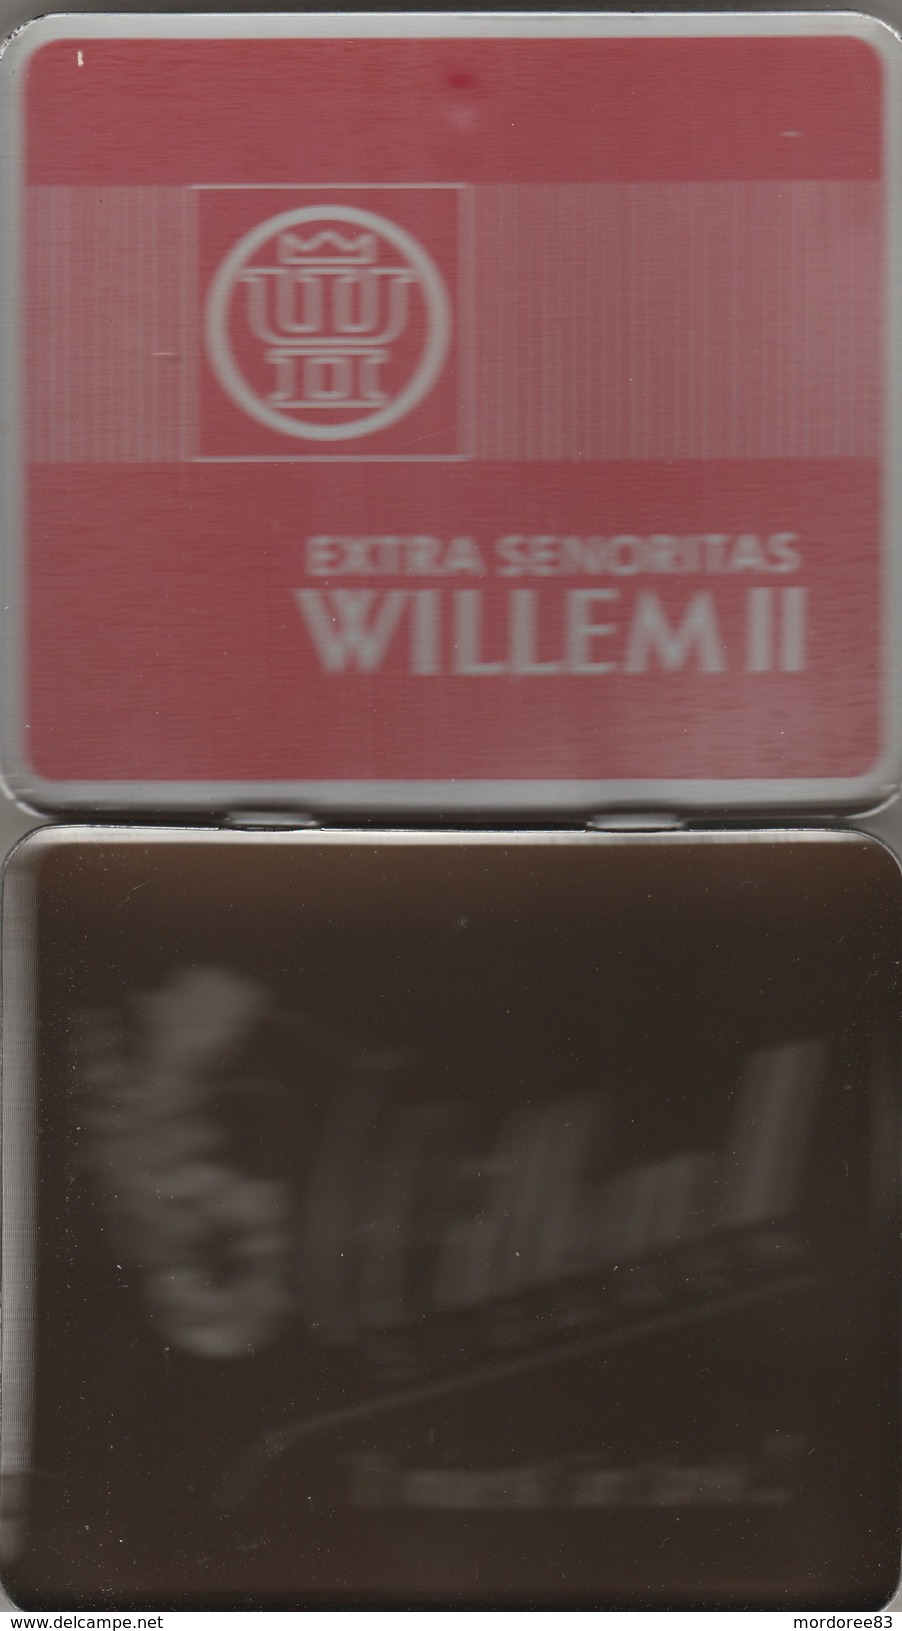 BOITE EN FER 20 EXTRA SENORITAS WILLEM II - Étuis à Cigares